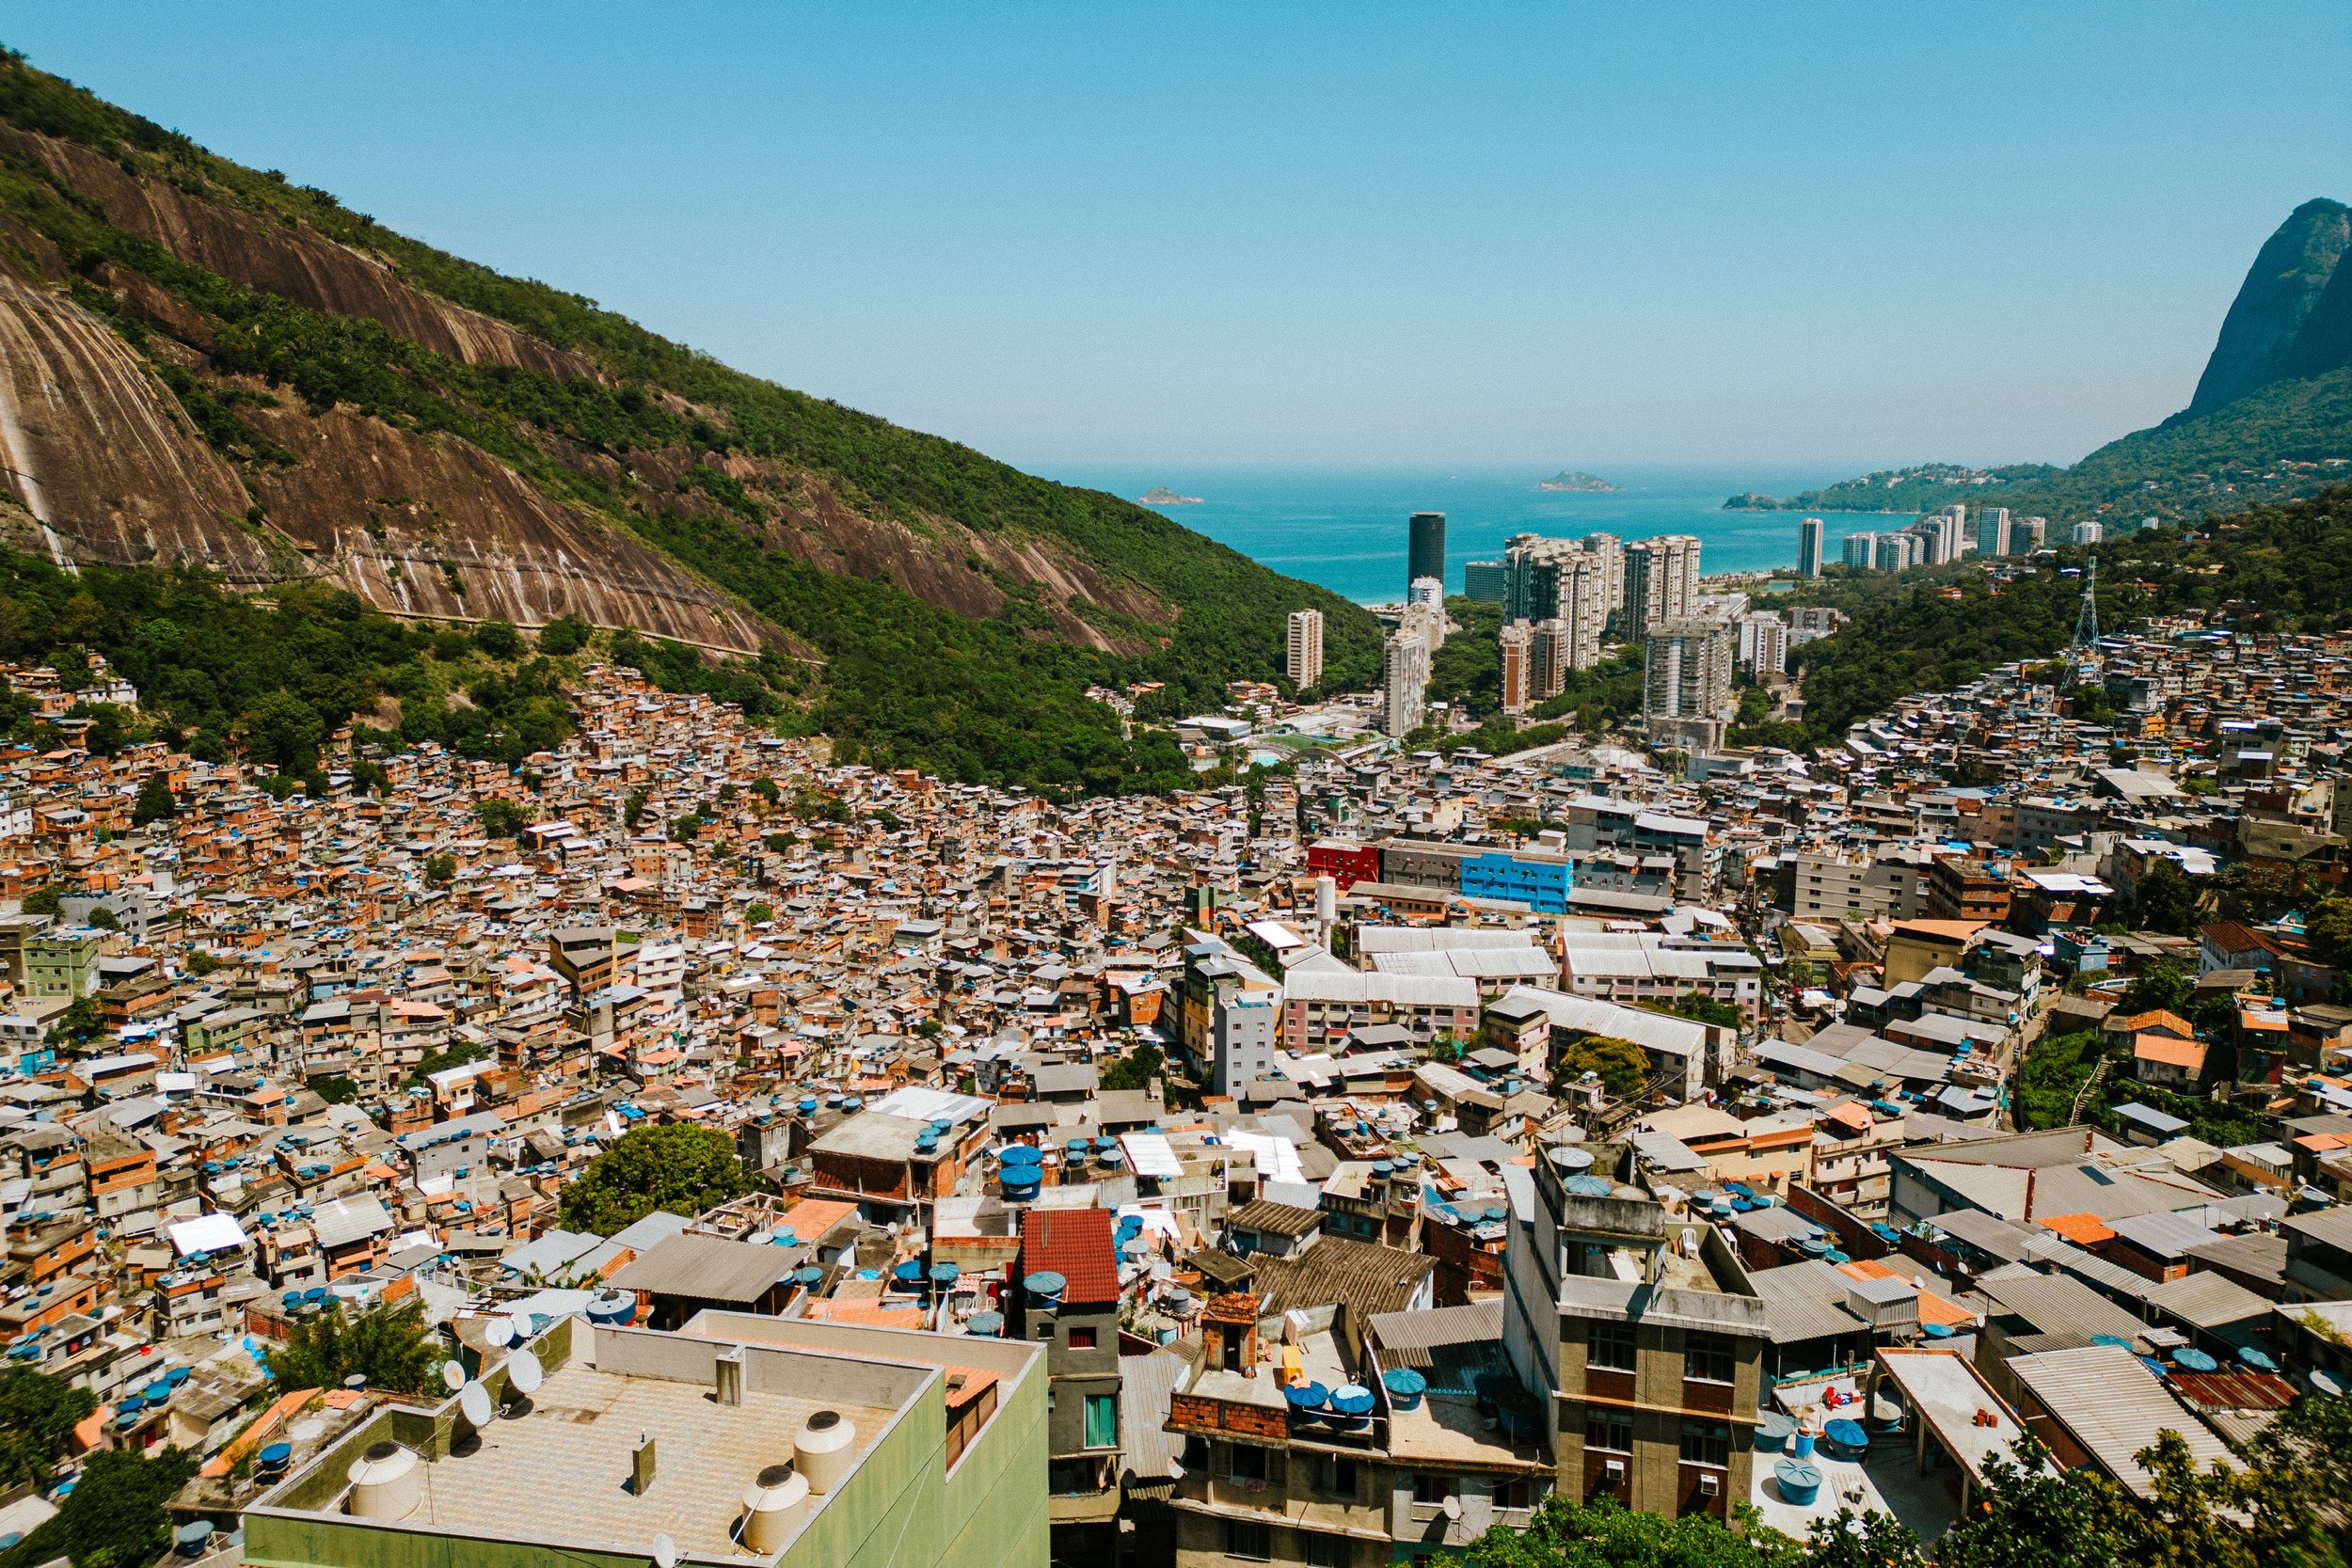 favela-da-rocinha-rio-de-janeiro-guia-turistico-para-favela-ricardo-franzen-producao-de-filme-documentario-educacao-na-favela-rio-de-janeiro-rocinha-2.jpg